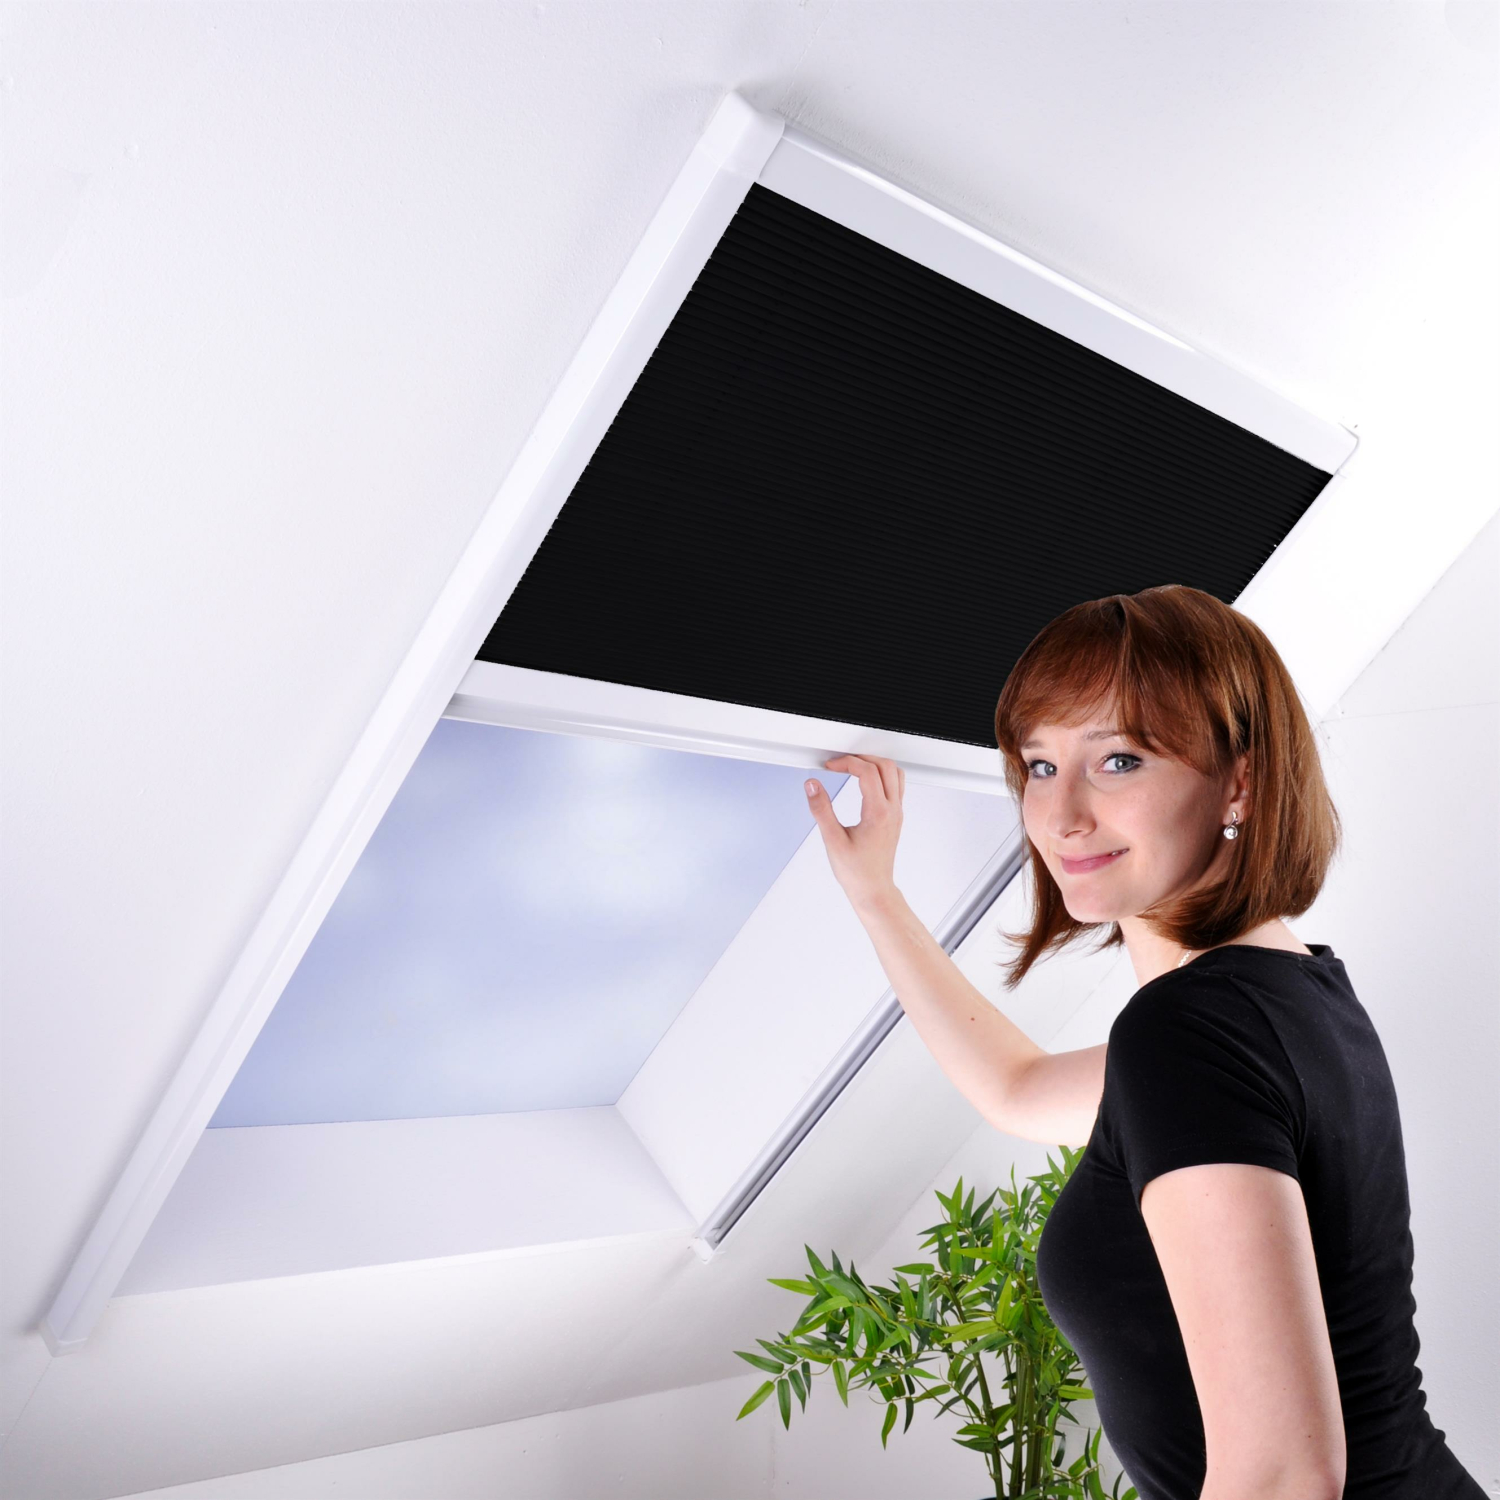 Sonnenschutz-Plissee für Dachfenster - Dachfensterplissee Sonnens, 48,99 €